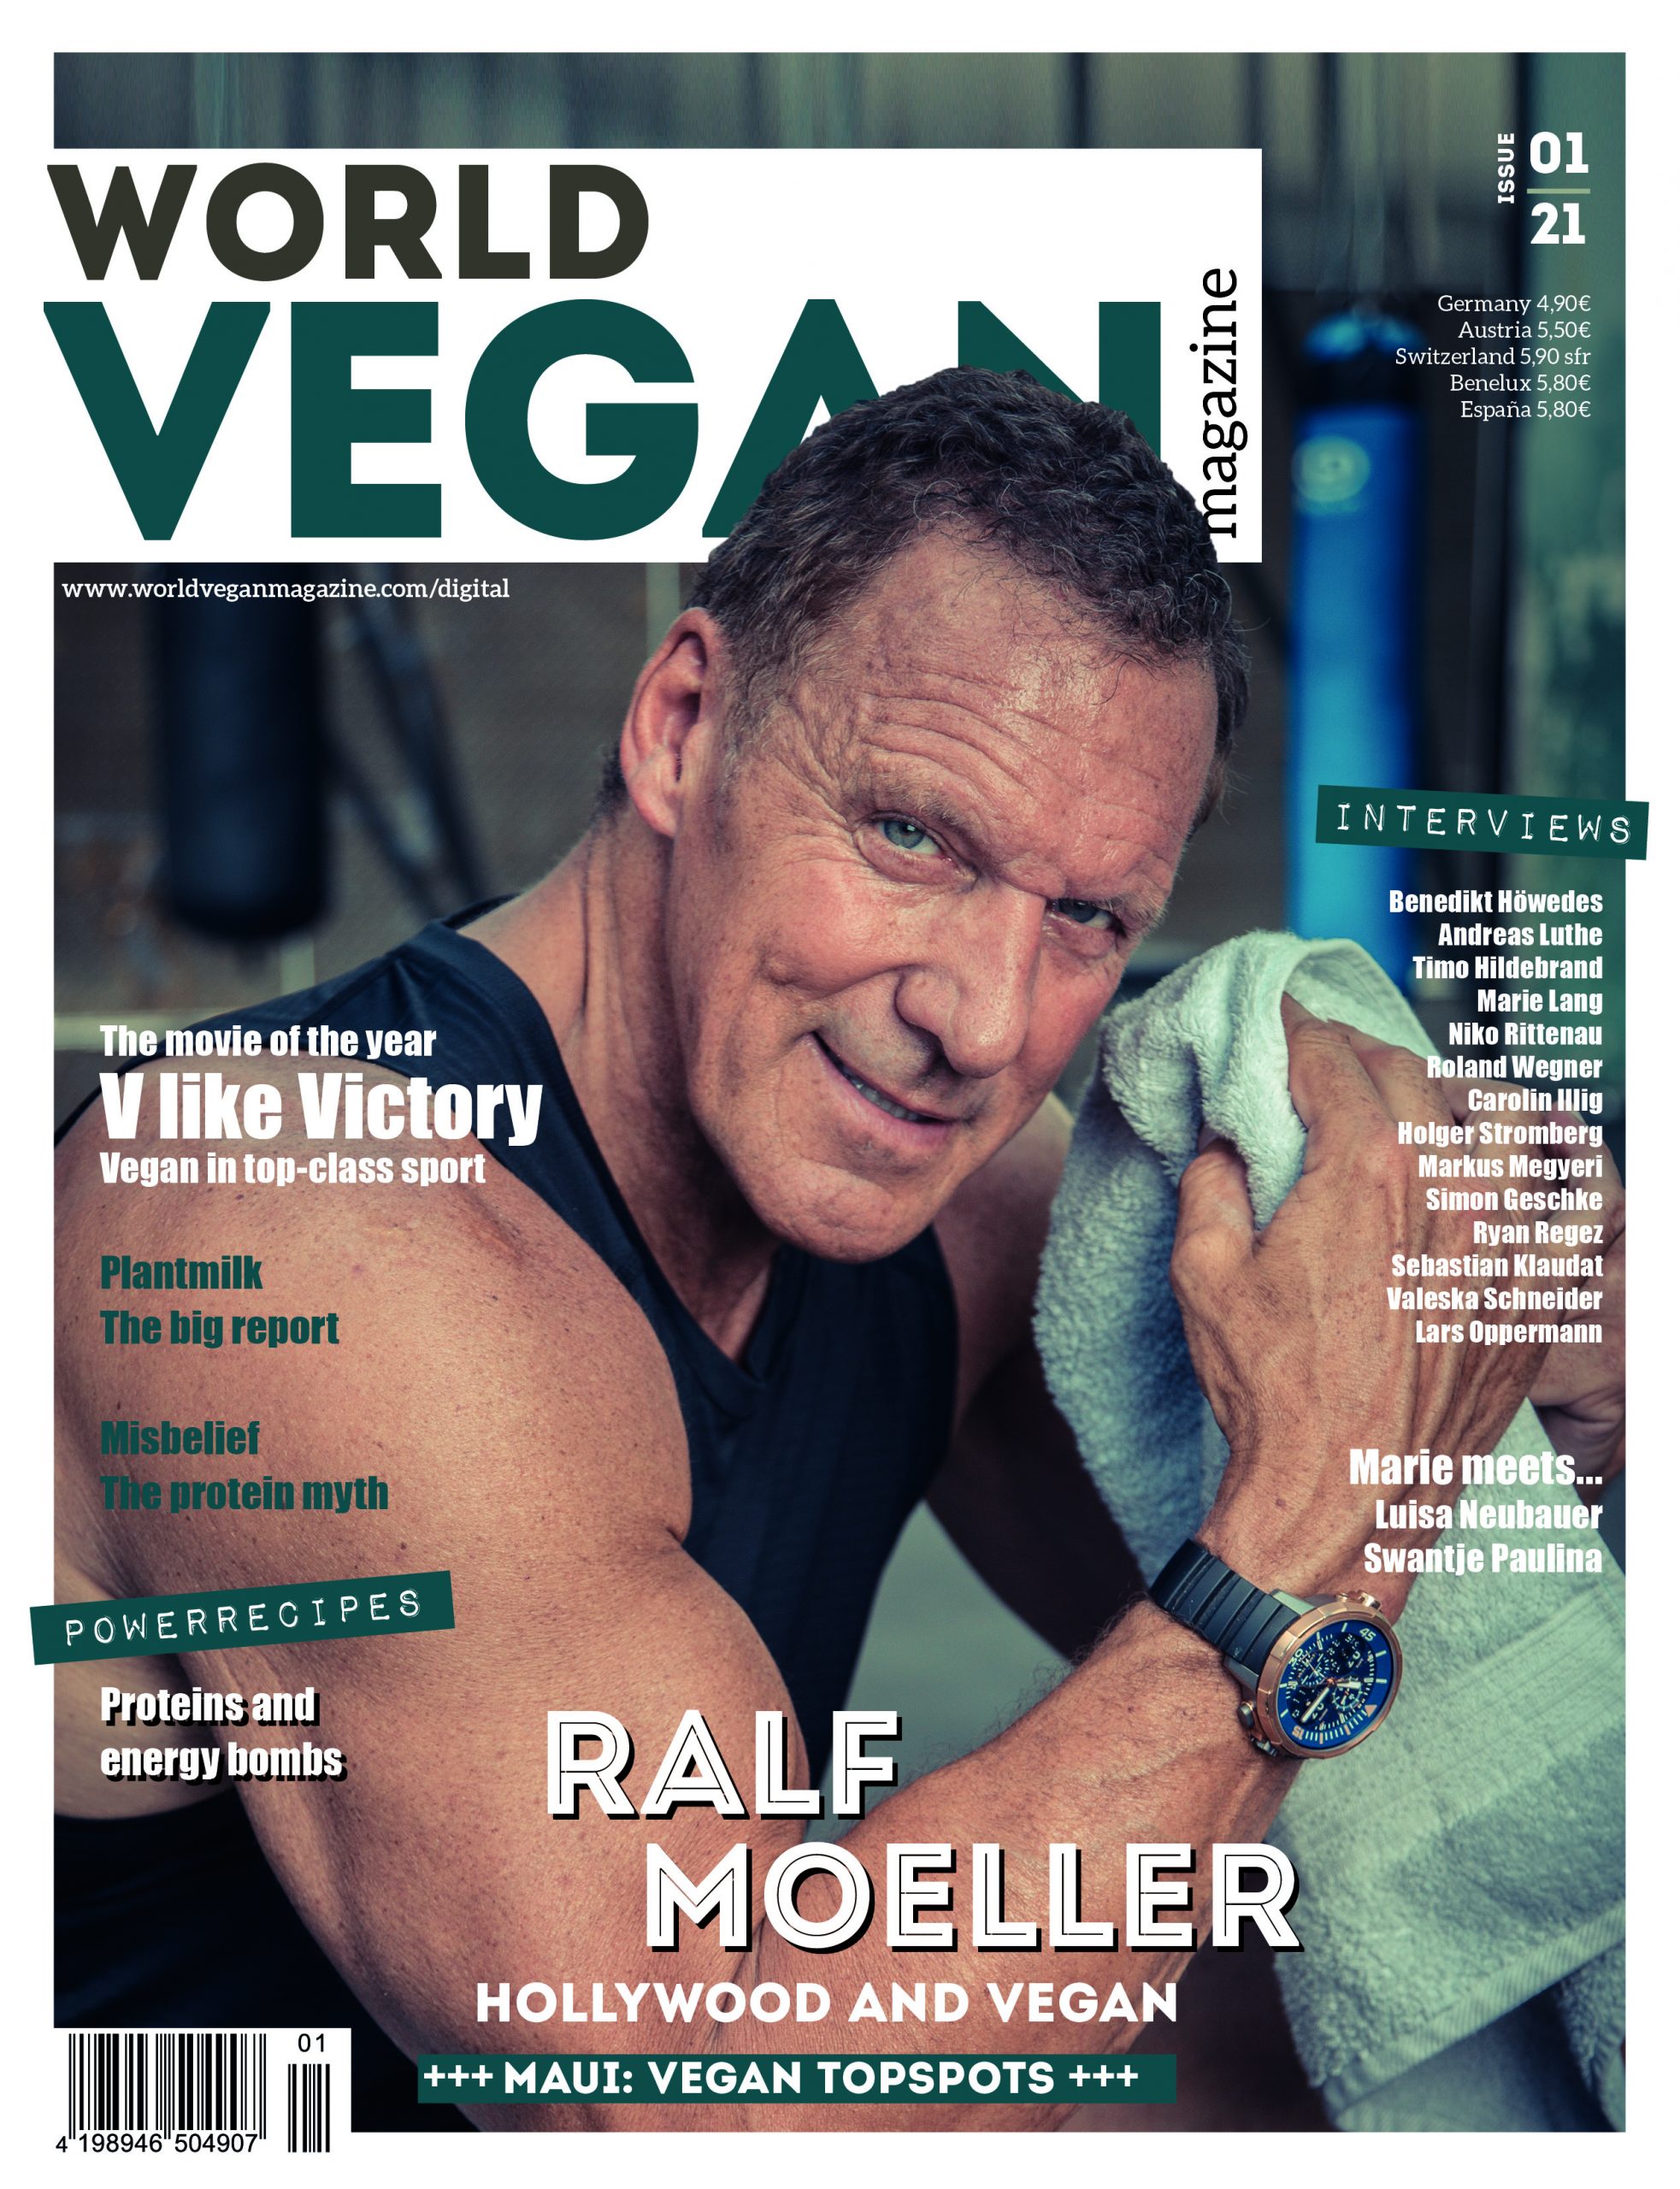 World Vegan Magazine 01/21